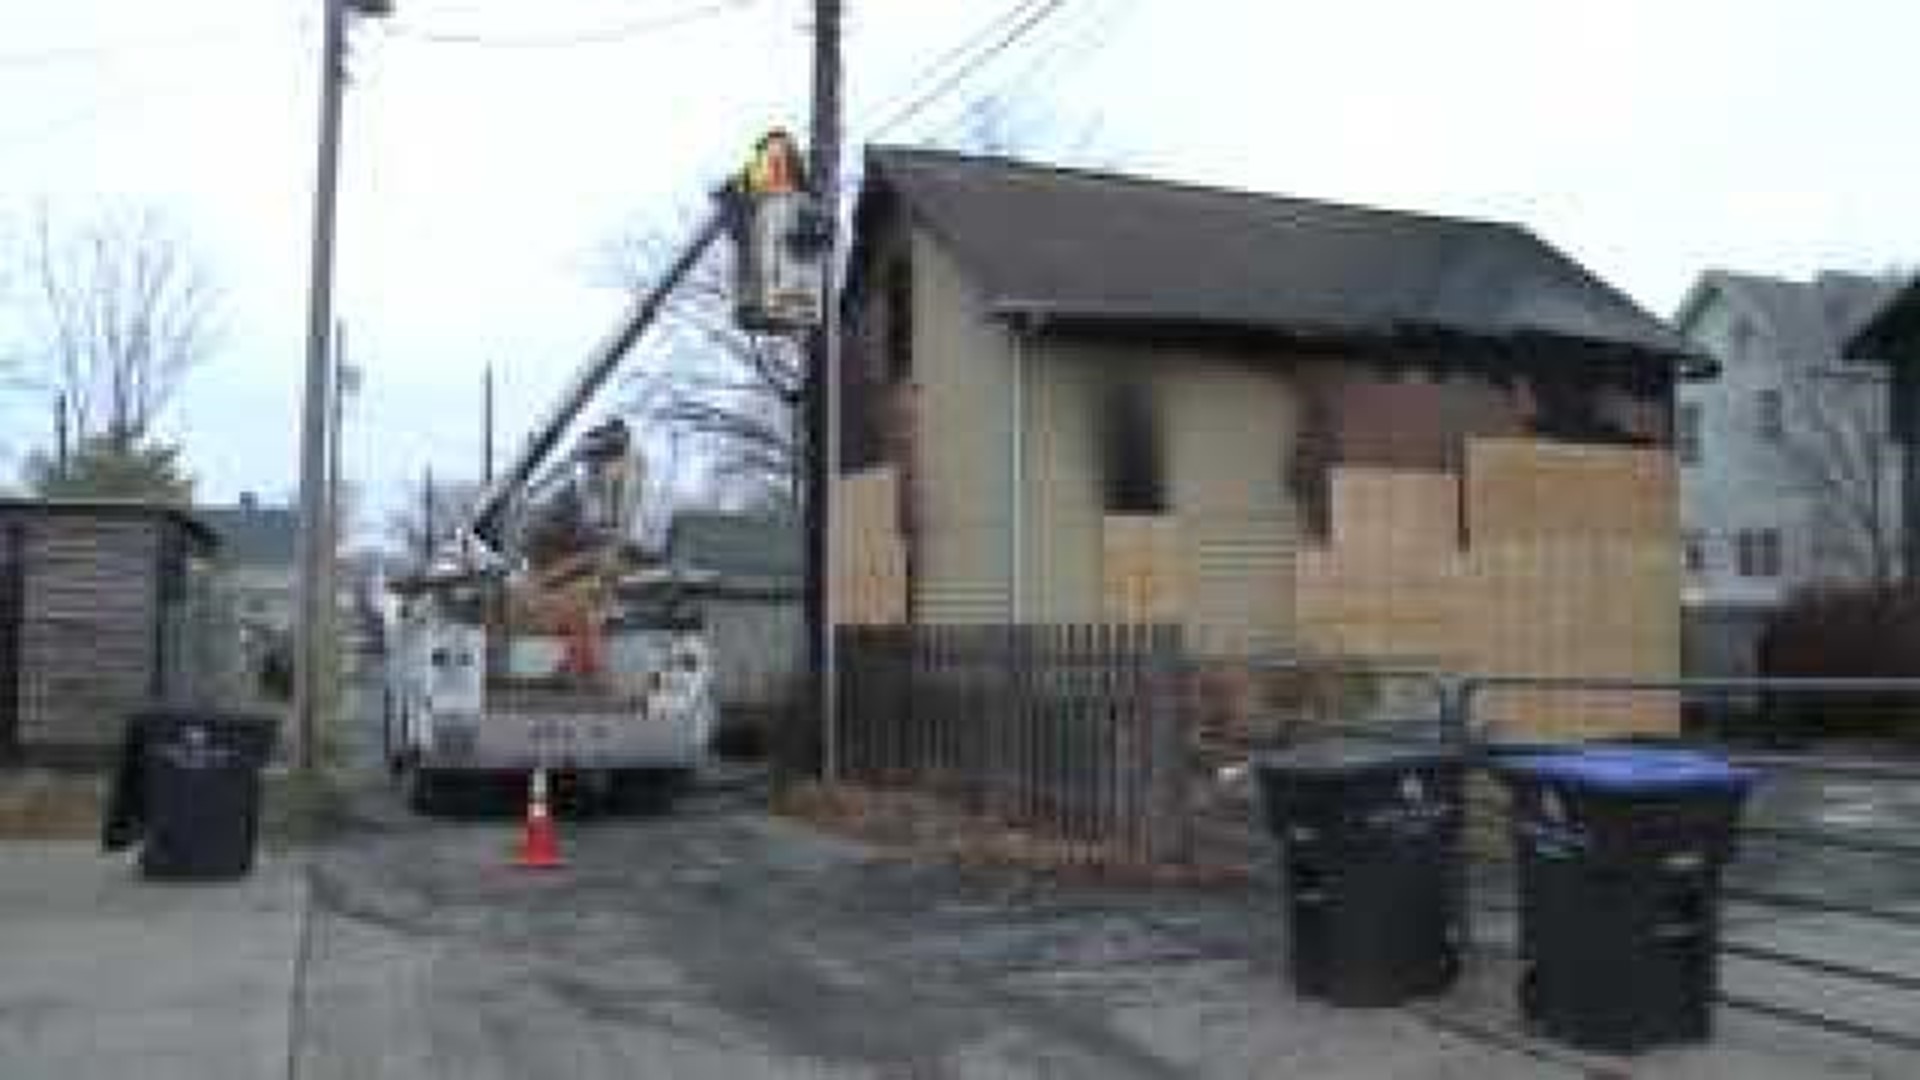 Possible arsonist strikes historic Rock Island neighborhood